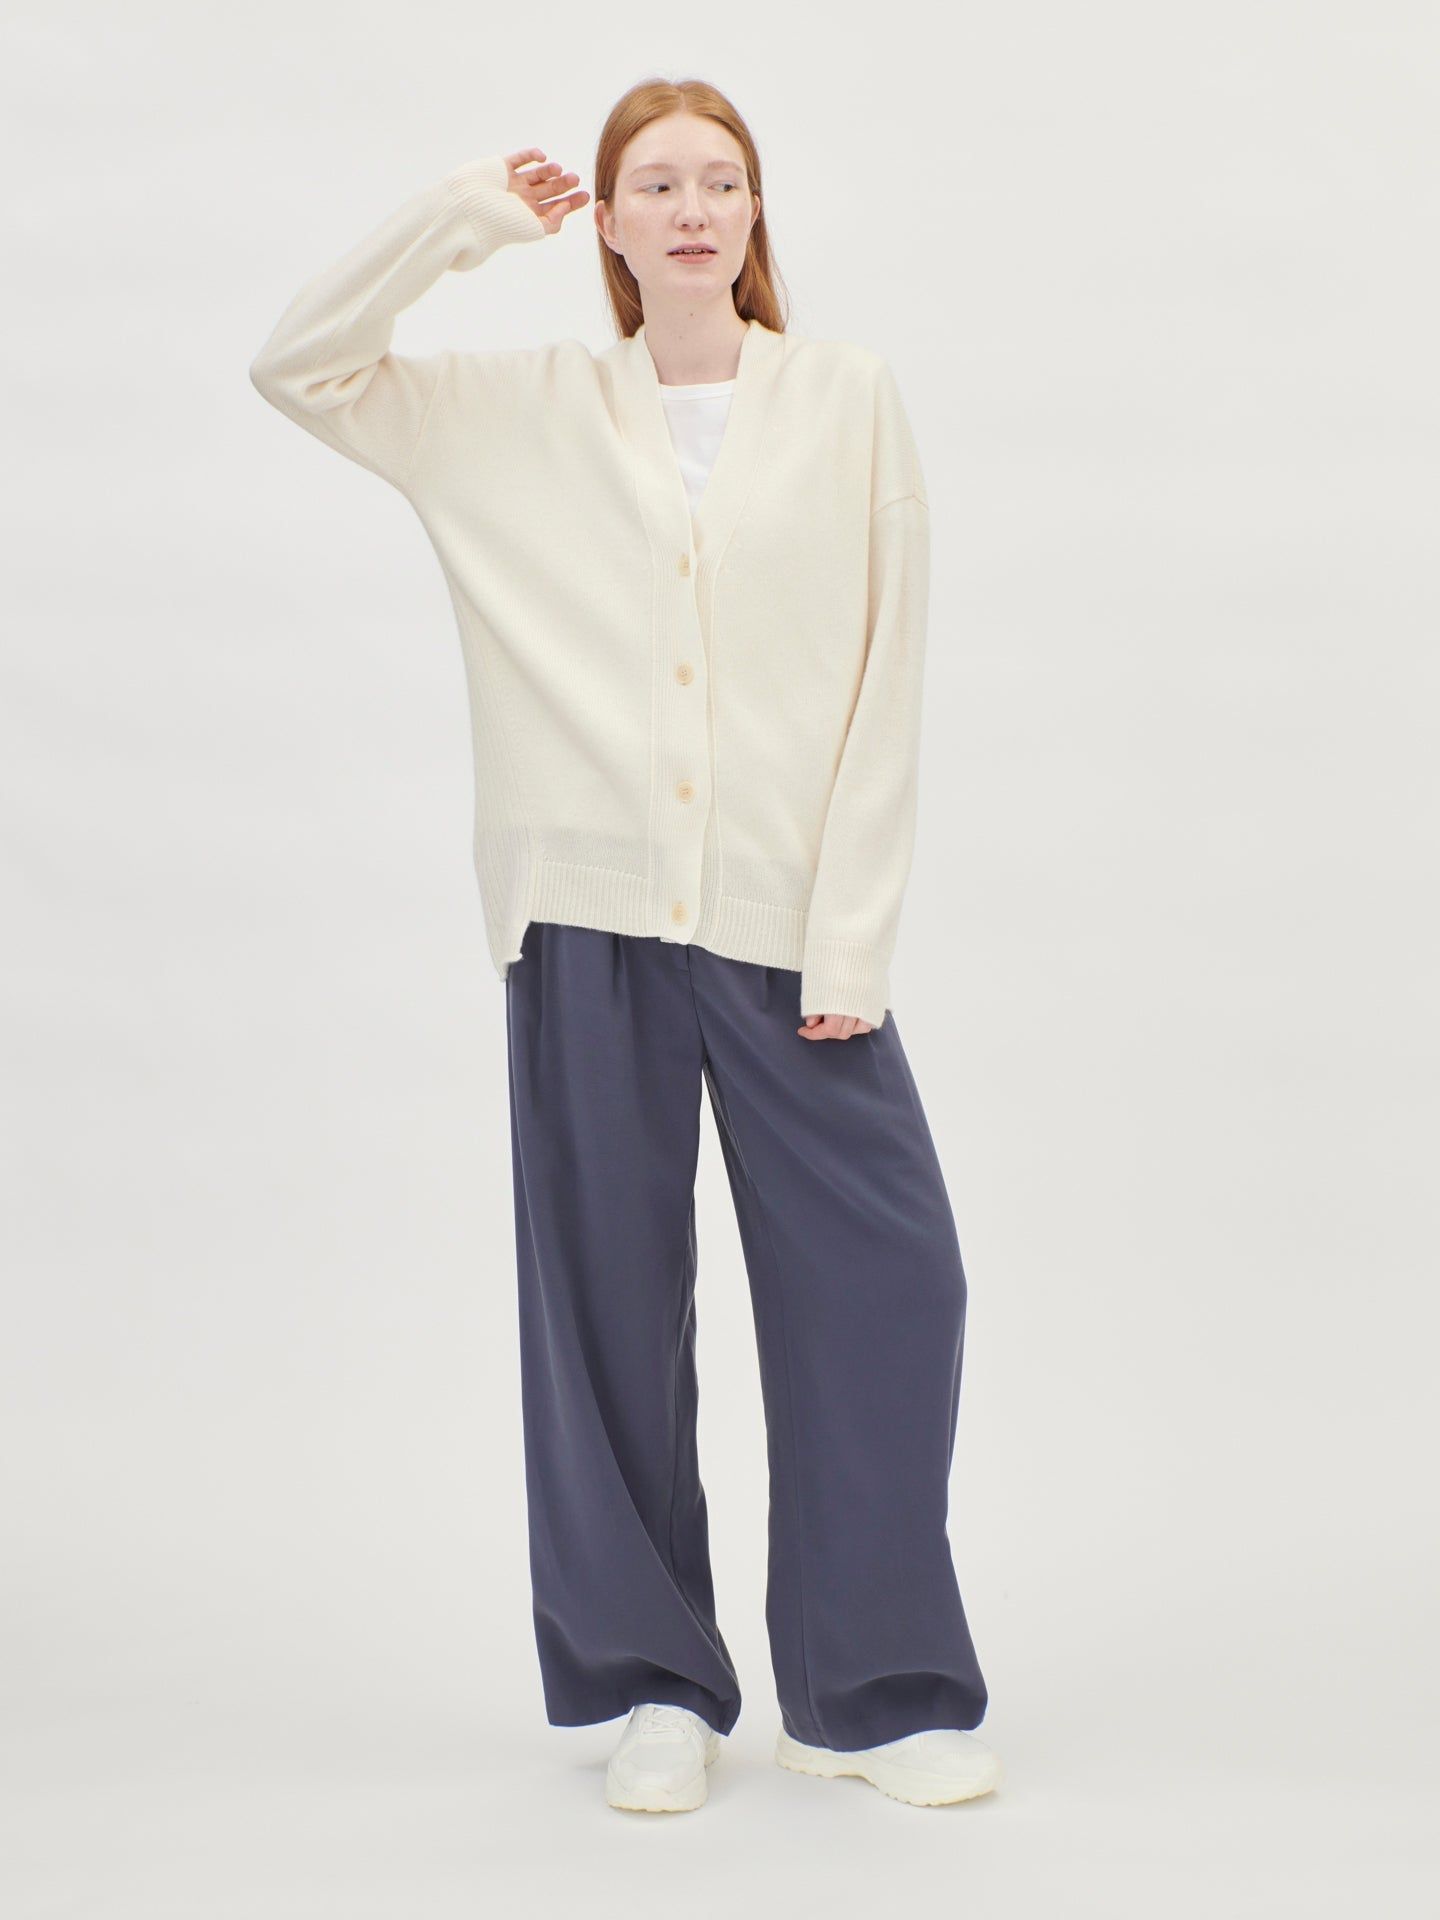 Women's Cashmere Contemporary V-Neck Cardigan White - Gobi Cashmere